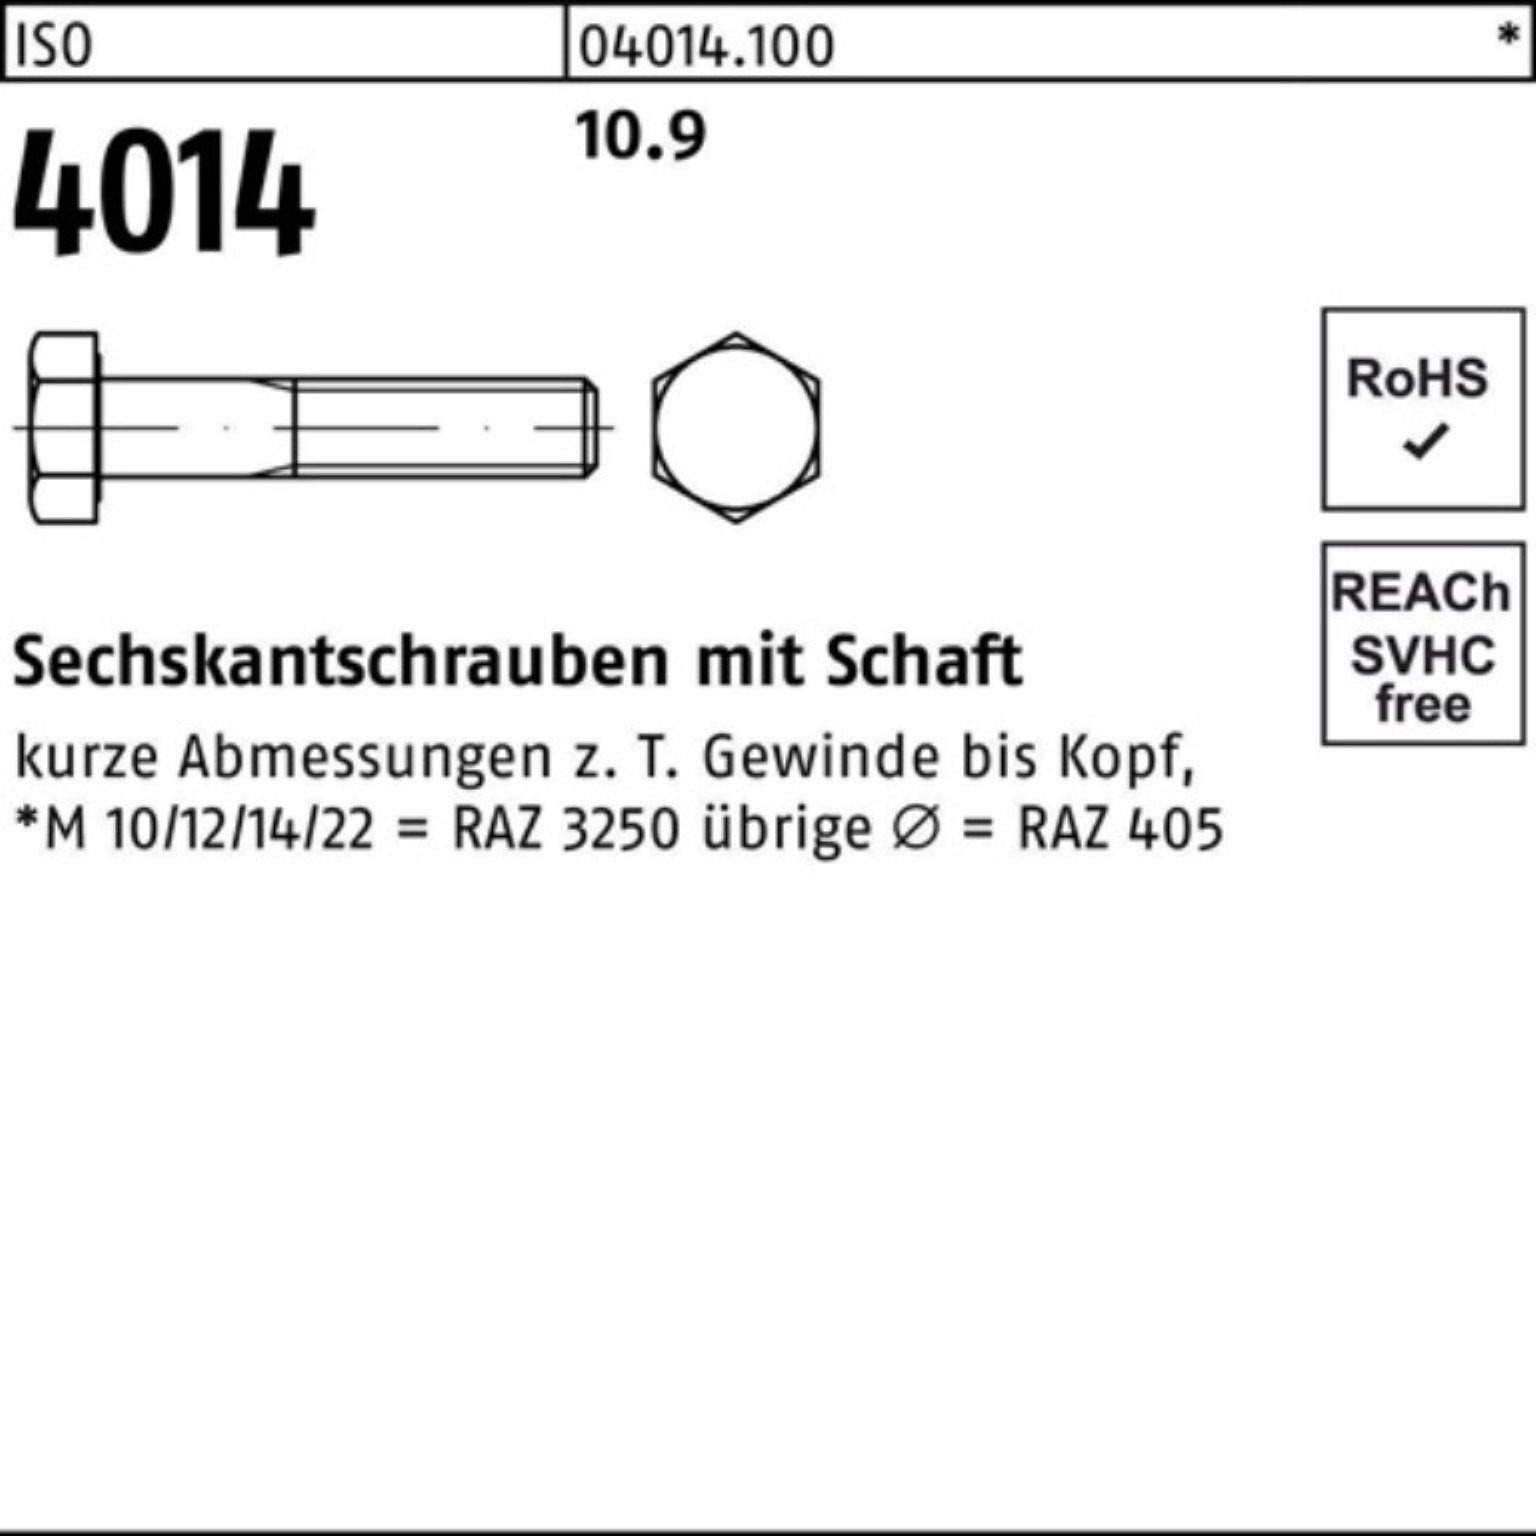 Bufab Sechskantschraube 100er Sechskantschraube Schaft Stück 90 25 M22x 4014 10.9 Pack IS ISO